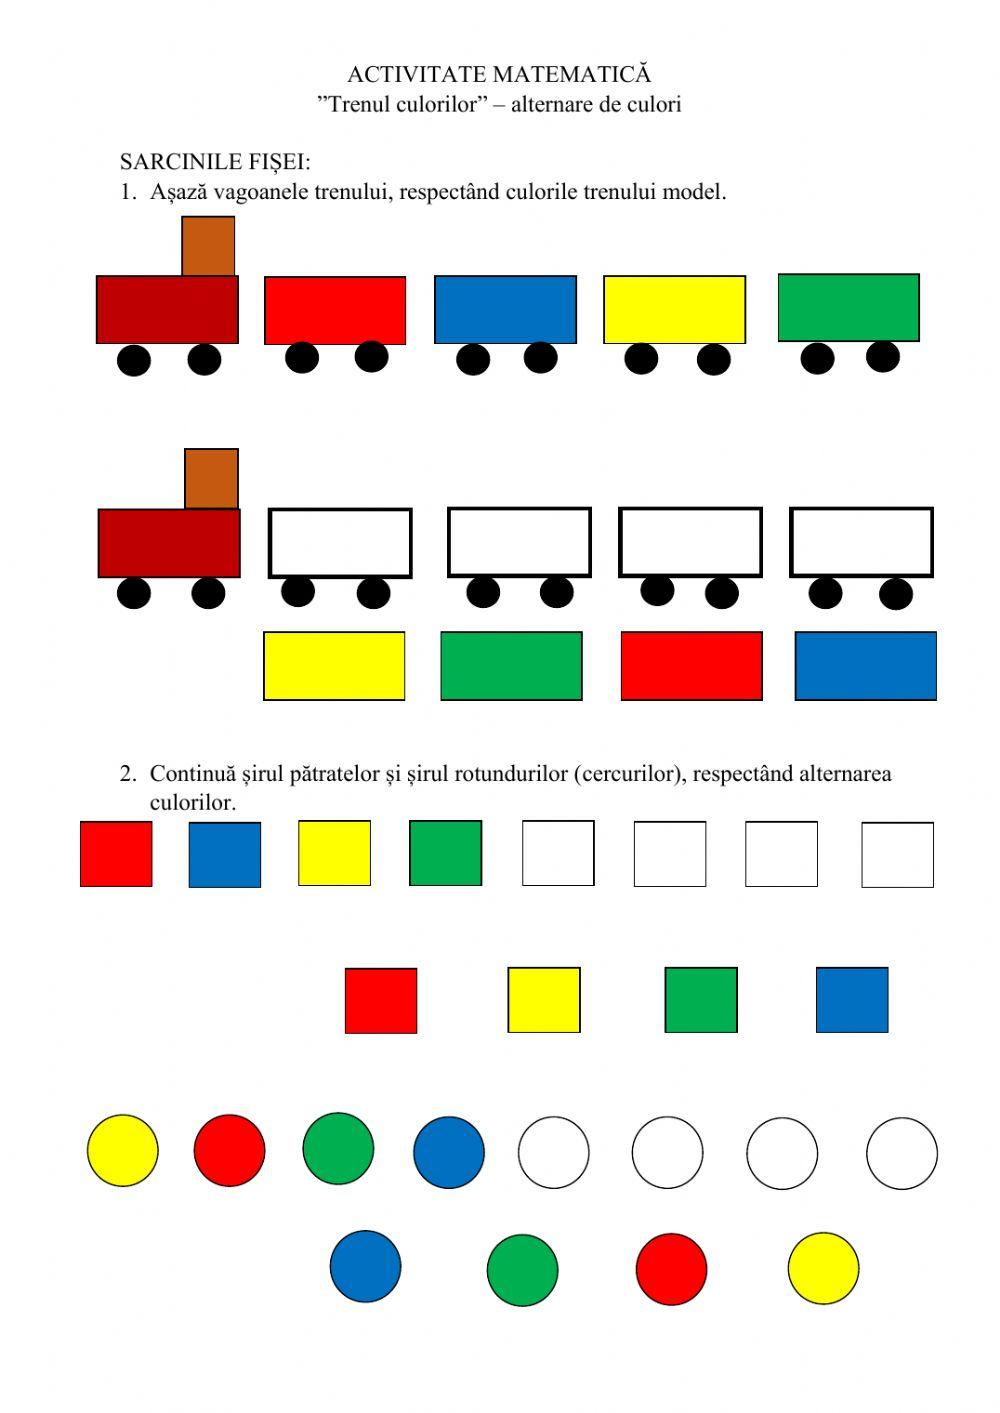 Trenul culorilor